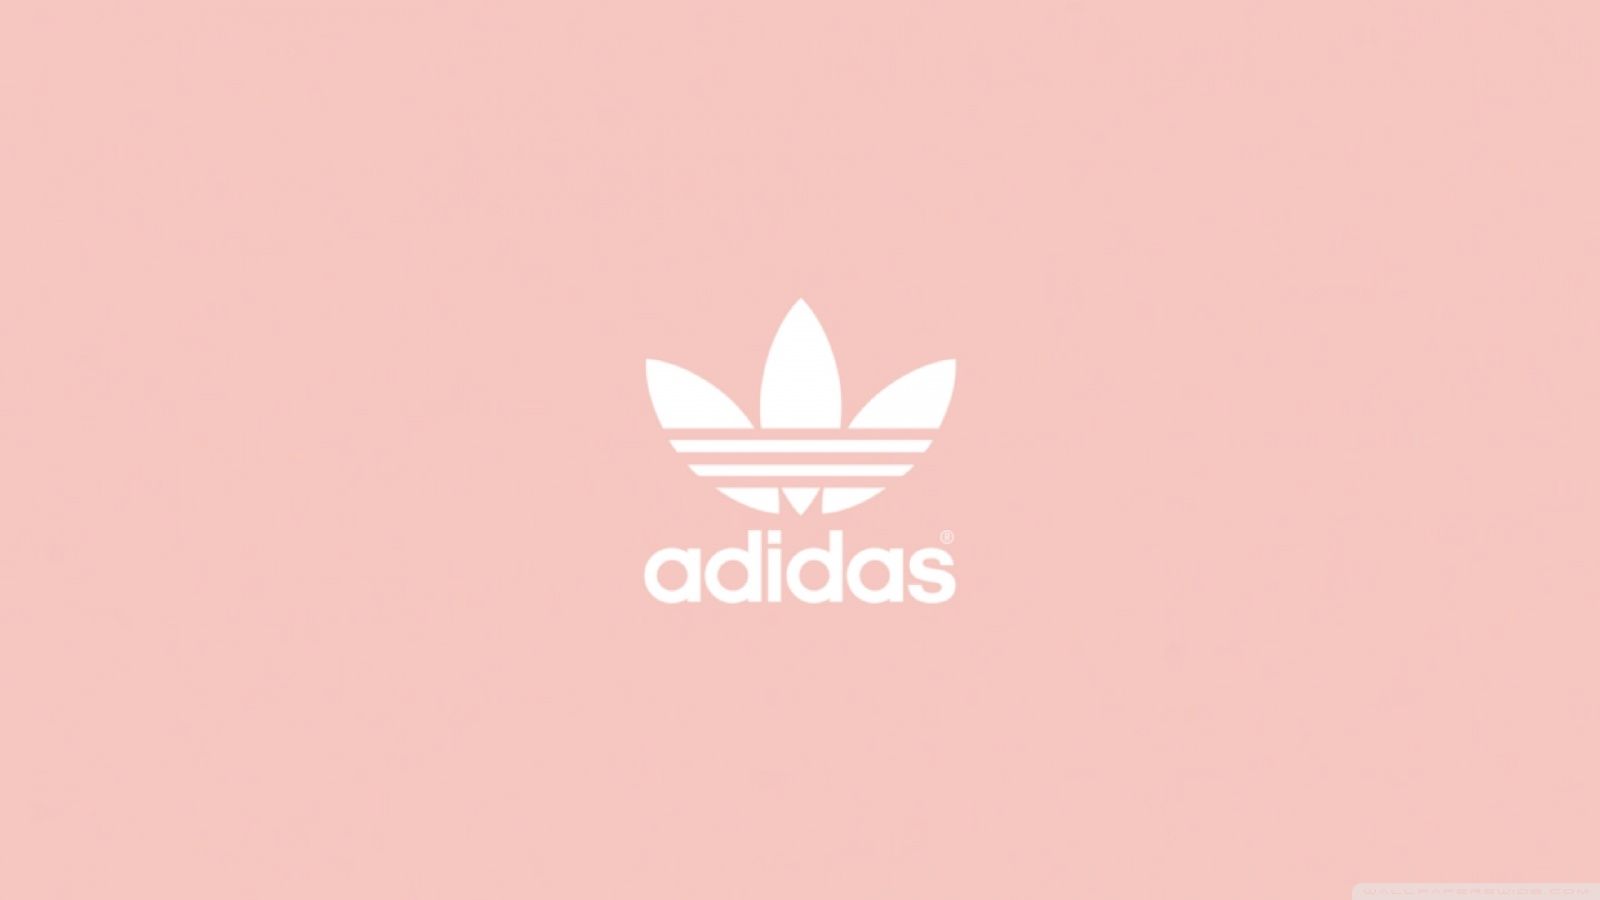 Hình nền Adidas logo hồng: Bạn muốn tìm kiếm một hình nền độc đáo và sáng tạo? Hãy chiêm ngưỡng hình nền Adidas logo hồng đầy bắt mắt. Với nền màu vàng óng ánh và logo Adidas hồng nổi bật, hình ảnh này sẽ giúp cho màn hình của bạn trở nên độc đáo hơn bao giờ hết.